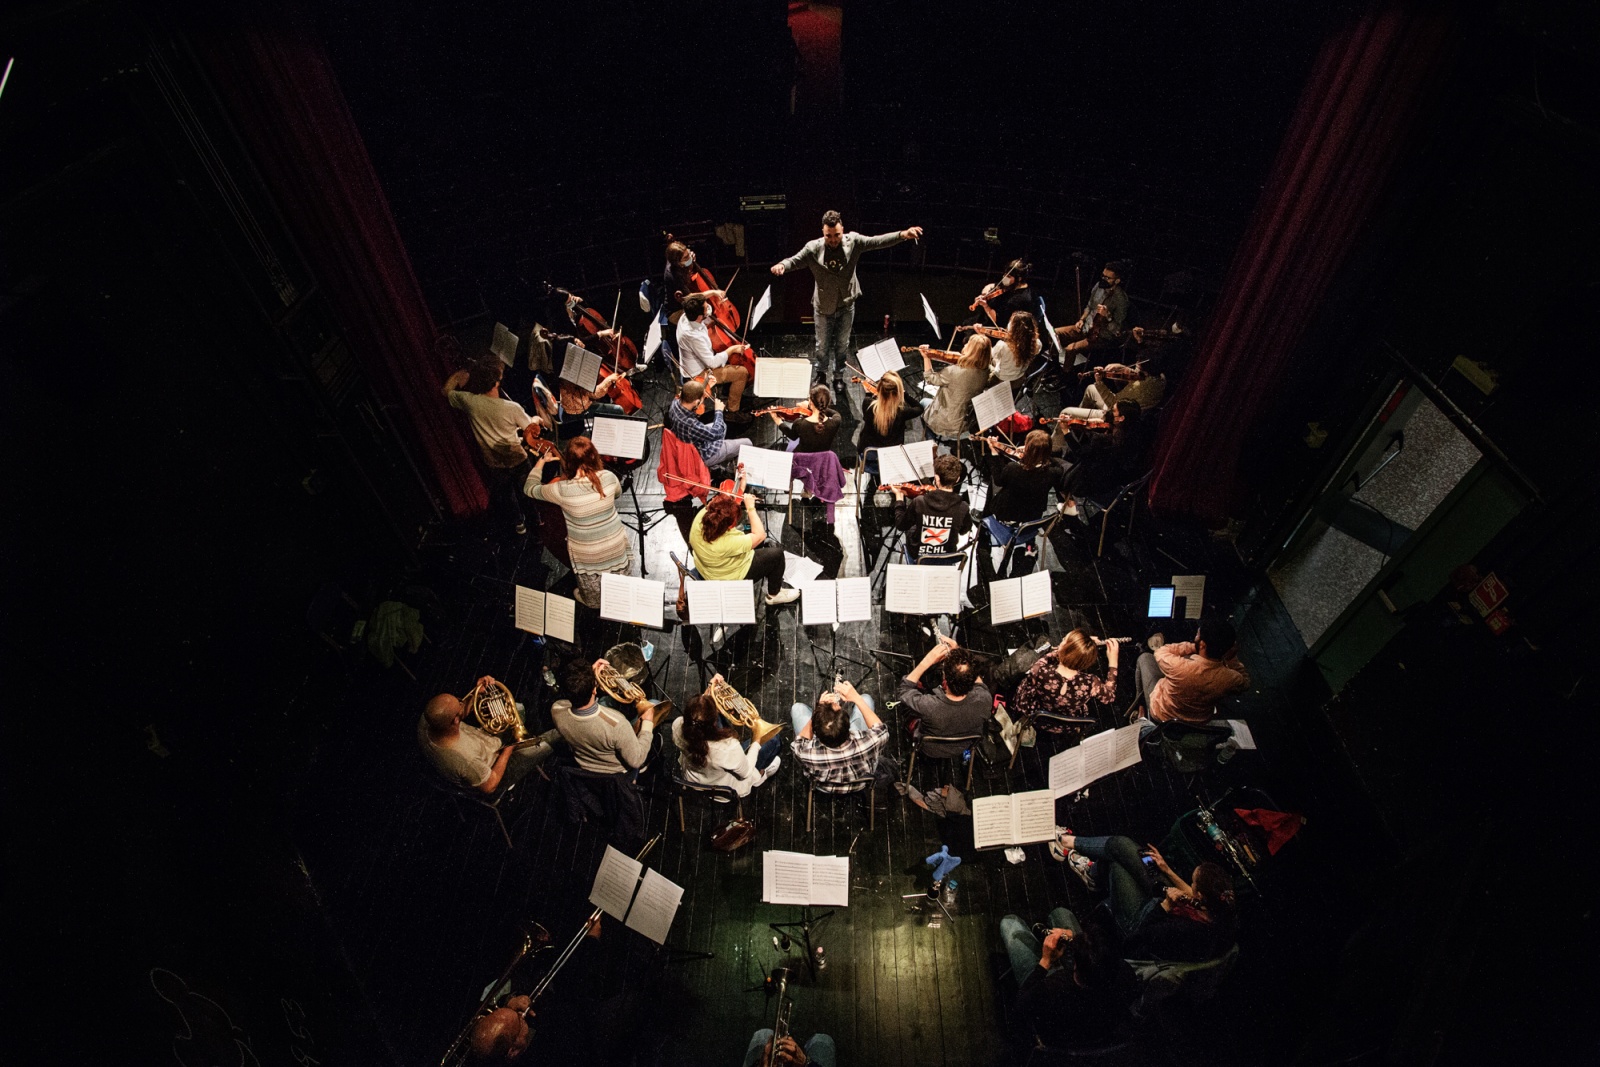 Teatro Oscar, Milano, Italy, 2021 - Panoramica della nuova "Orchestra Notturna Clandestina" di Milano durante le prove.